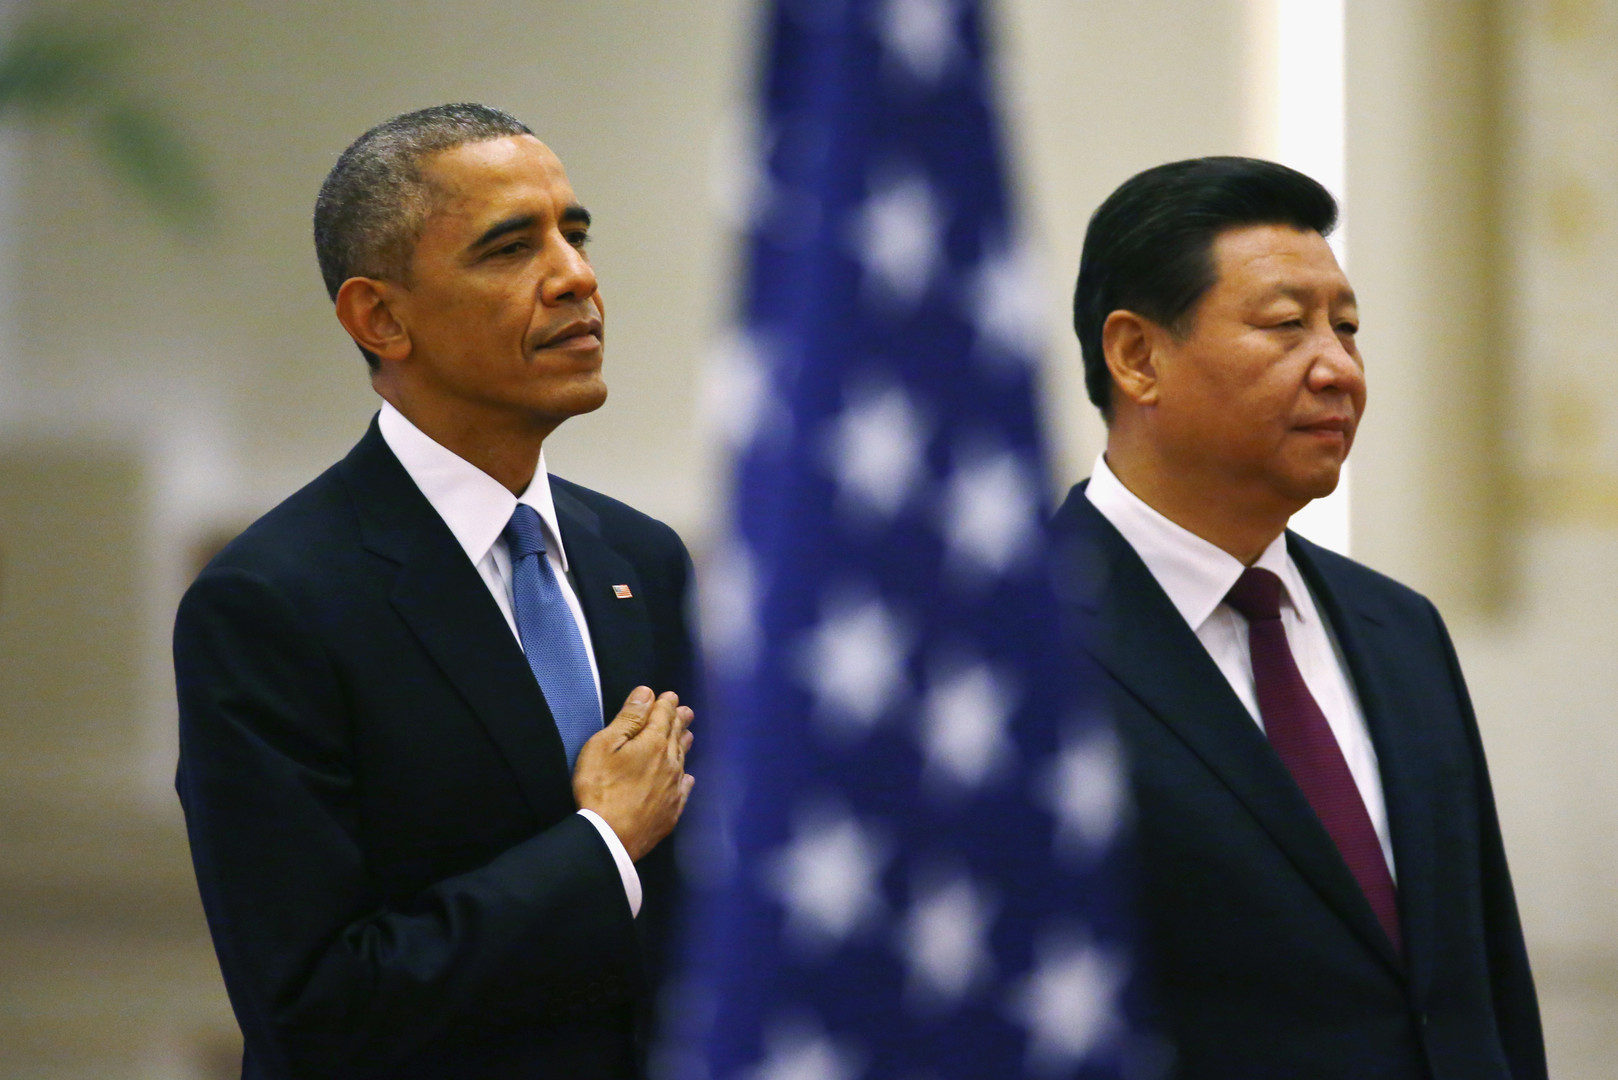 Barack Obama und Xi Jinping stehen hinter einer amerikanischen Fahne in der Großen Halle des Volkes, Peking, November 2014. 